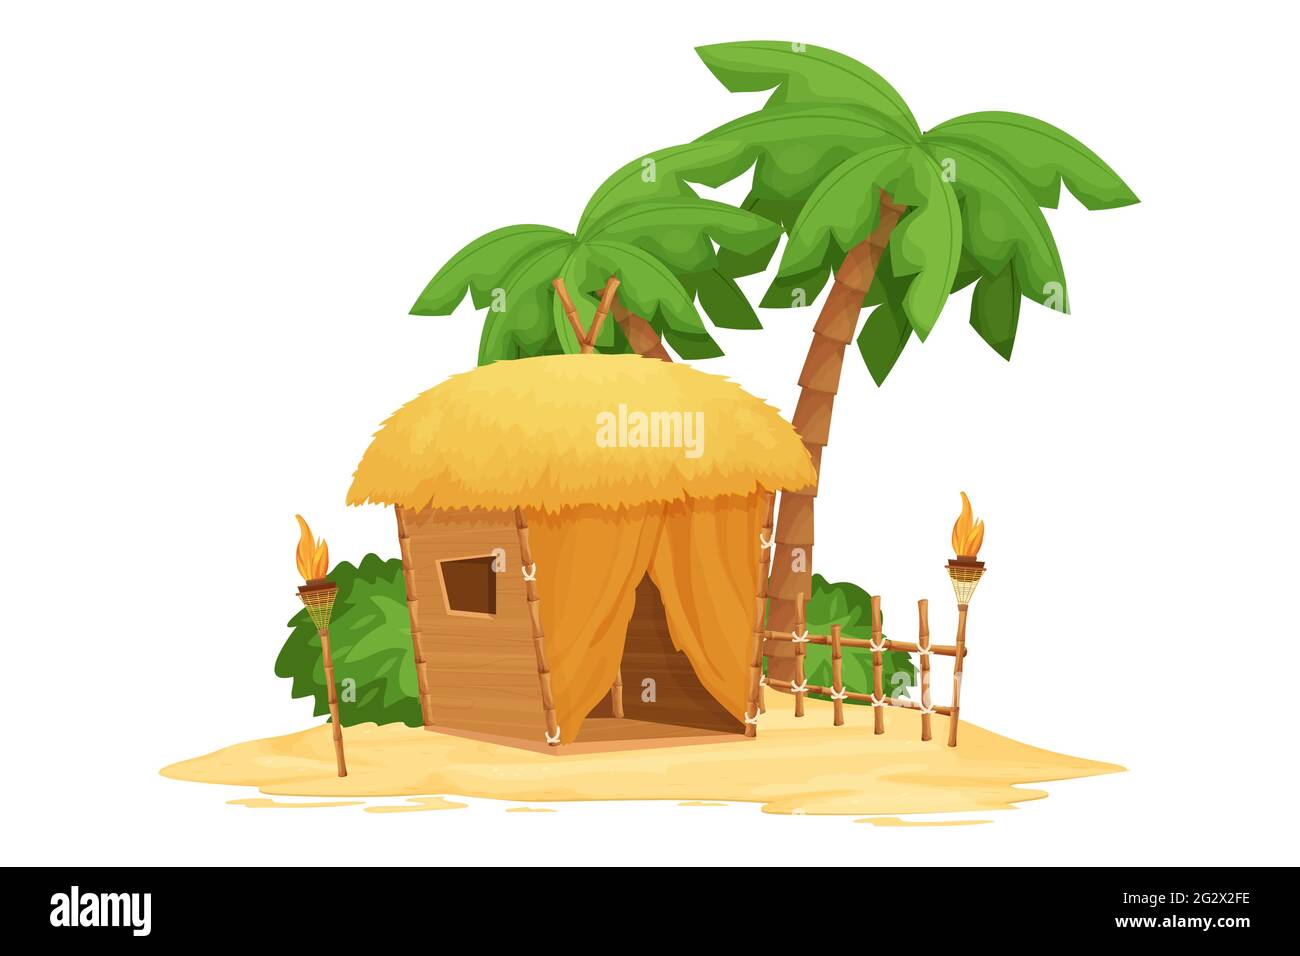 Bungalow de playa, cabaña tiki con techo de paja, bambú y detalles de madera sobre arena en estilo de dibujos animados aislados sobre fondo blanco. Fantástico edificio con palmeras Ilustración del Vector